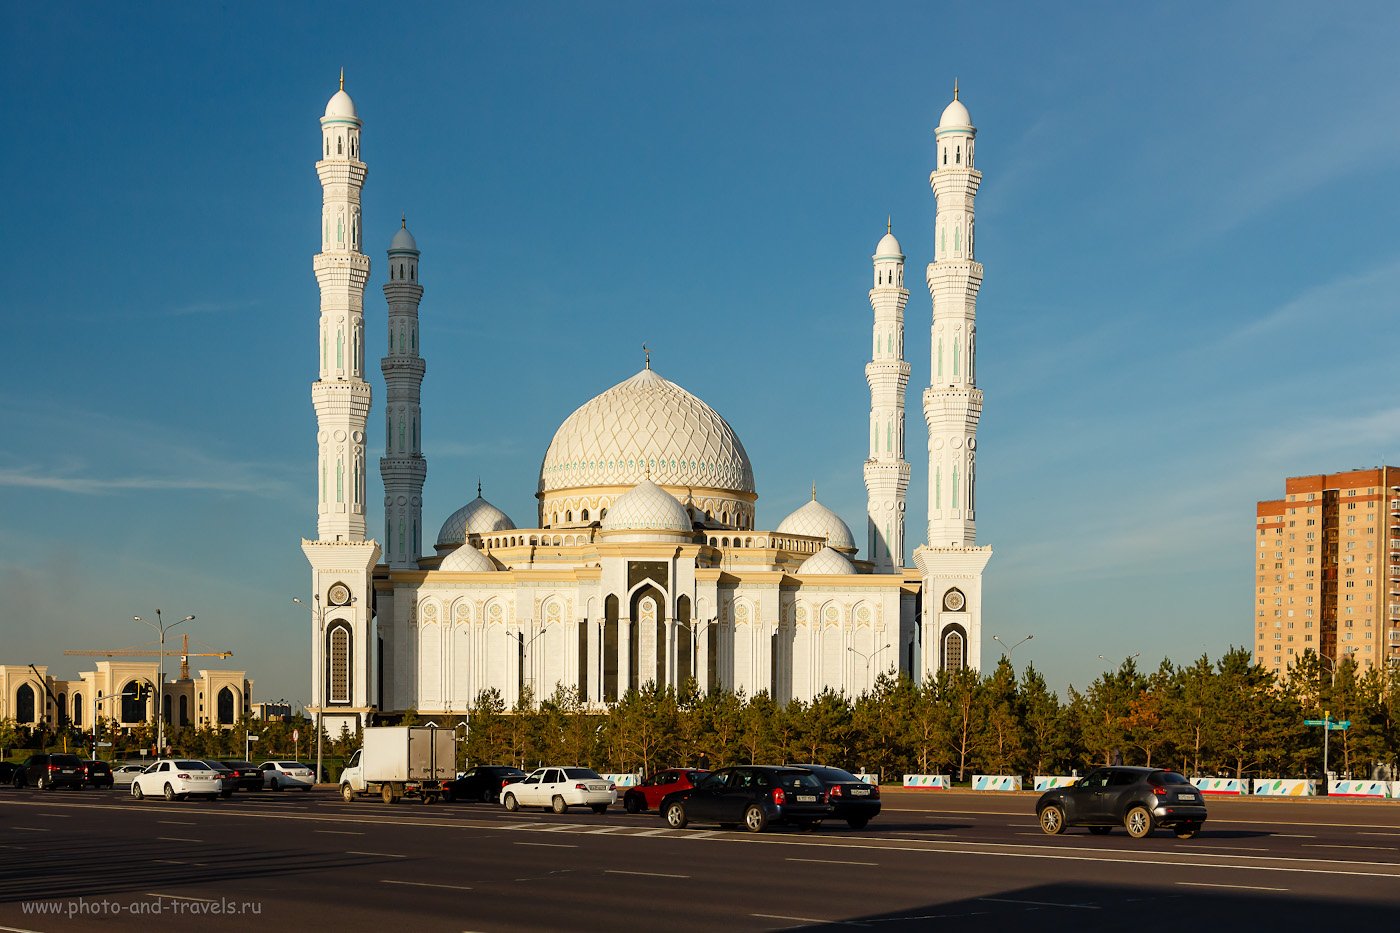 Снимок 22. Соборная мечеть «Хазрет Султан» в Астане. Интересные места столицы Казахстана. 1/400, +0.33, 8.0, 200, 35.